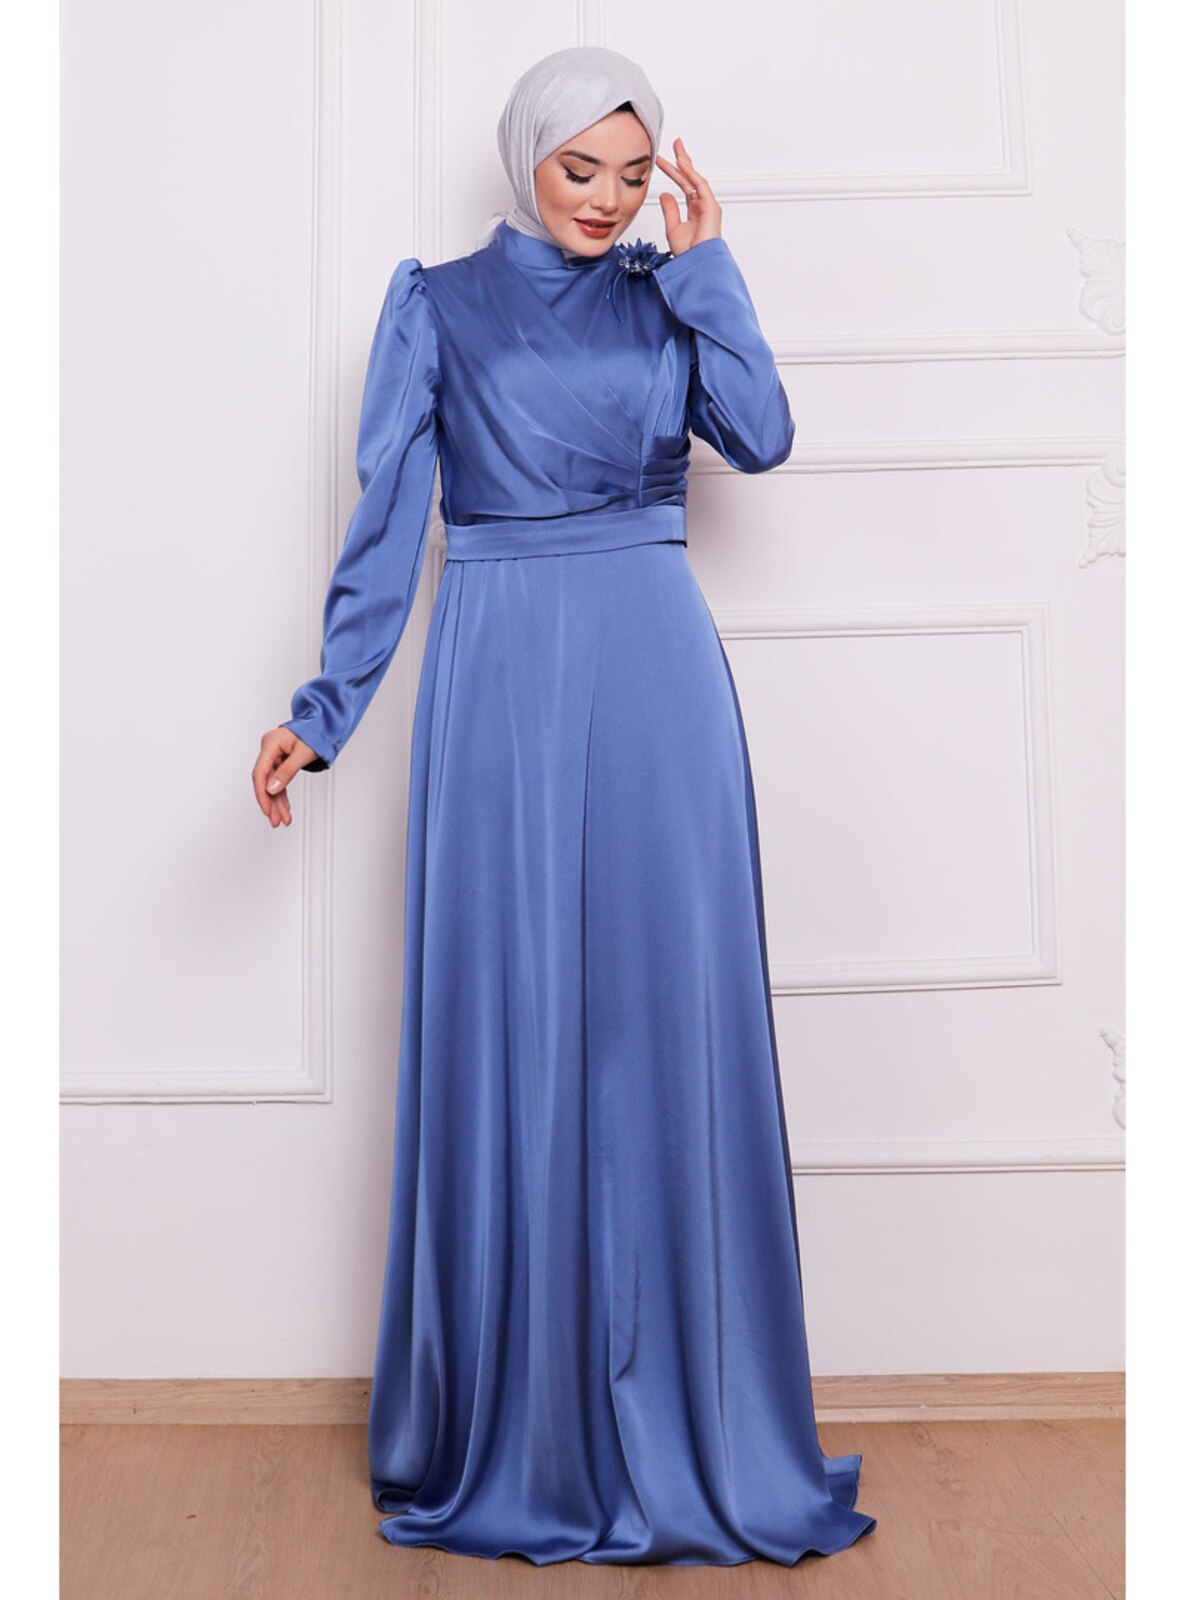  Blue Modest Evening Dress